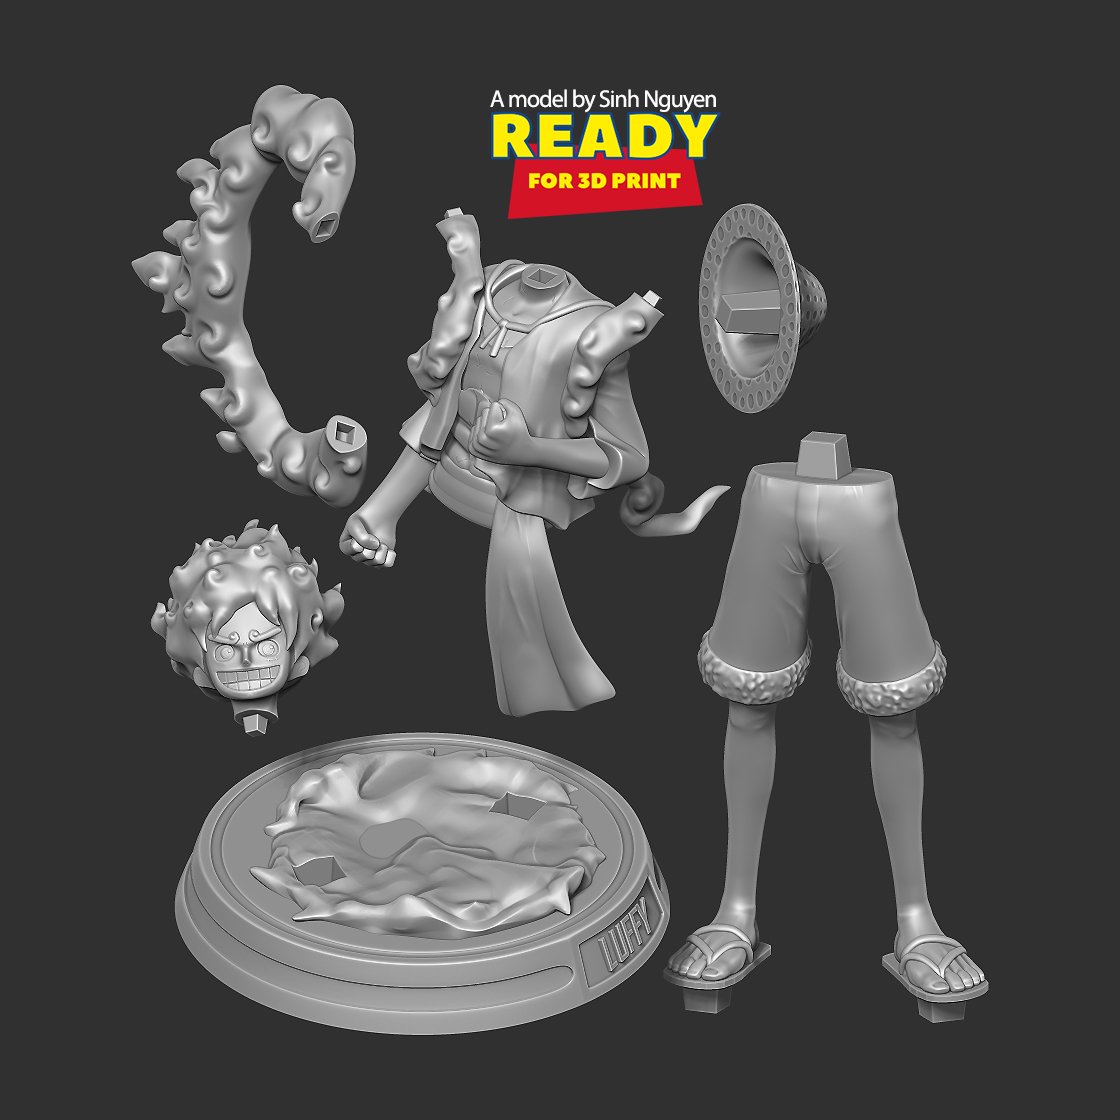 Luffy Gear 5 - One Piece 3D Print Model in Man 3DExport